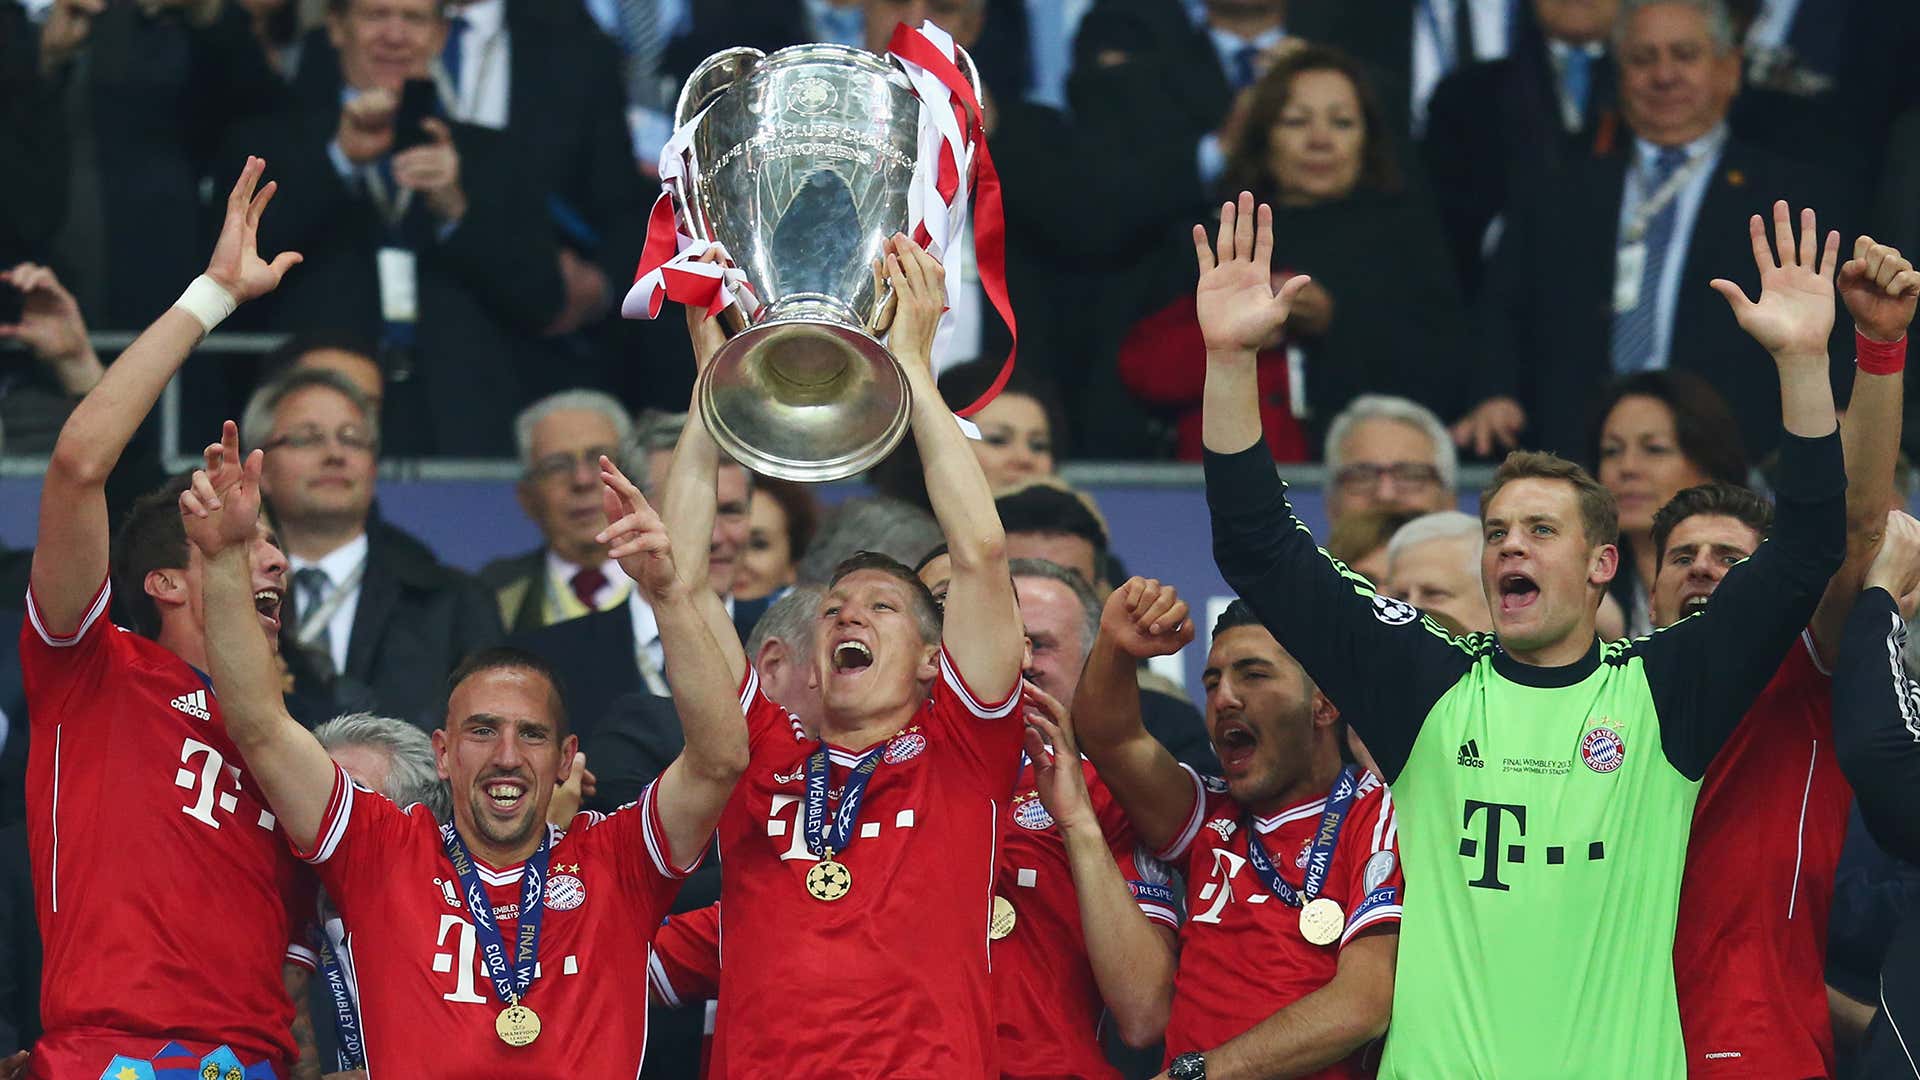 Bayern 2013 Champions League winners